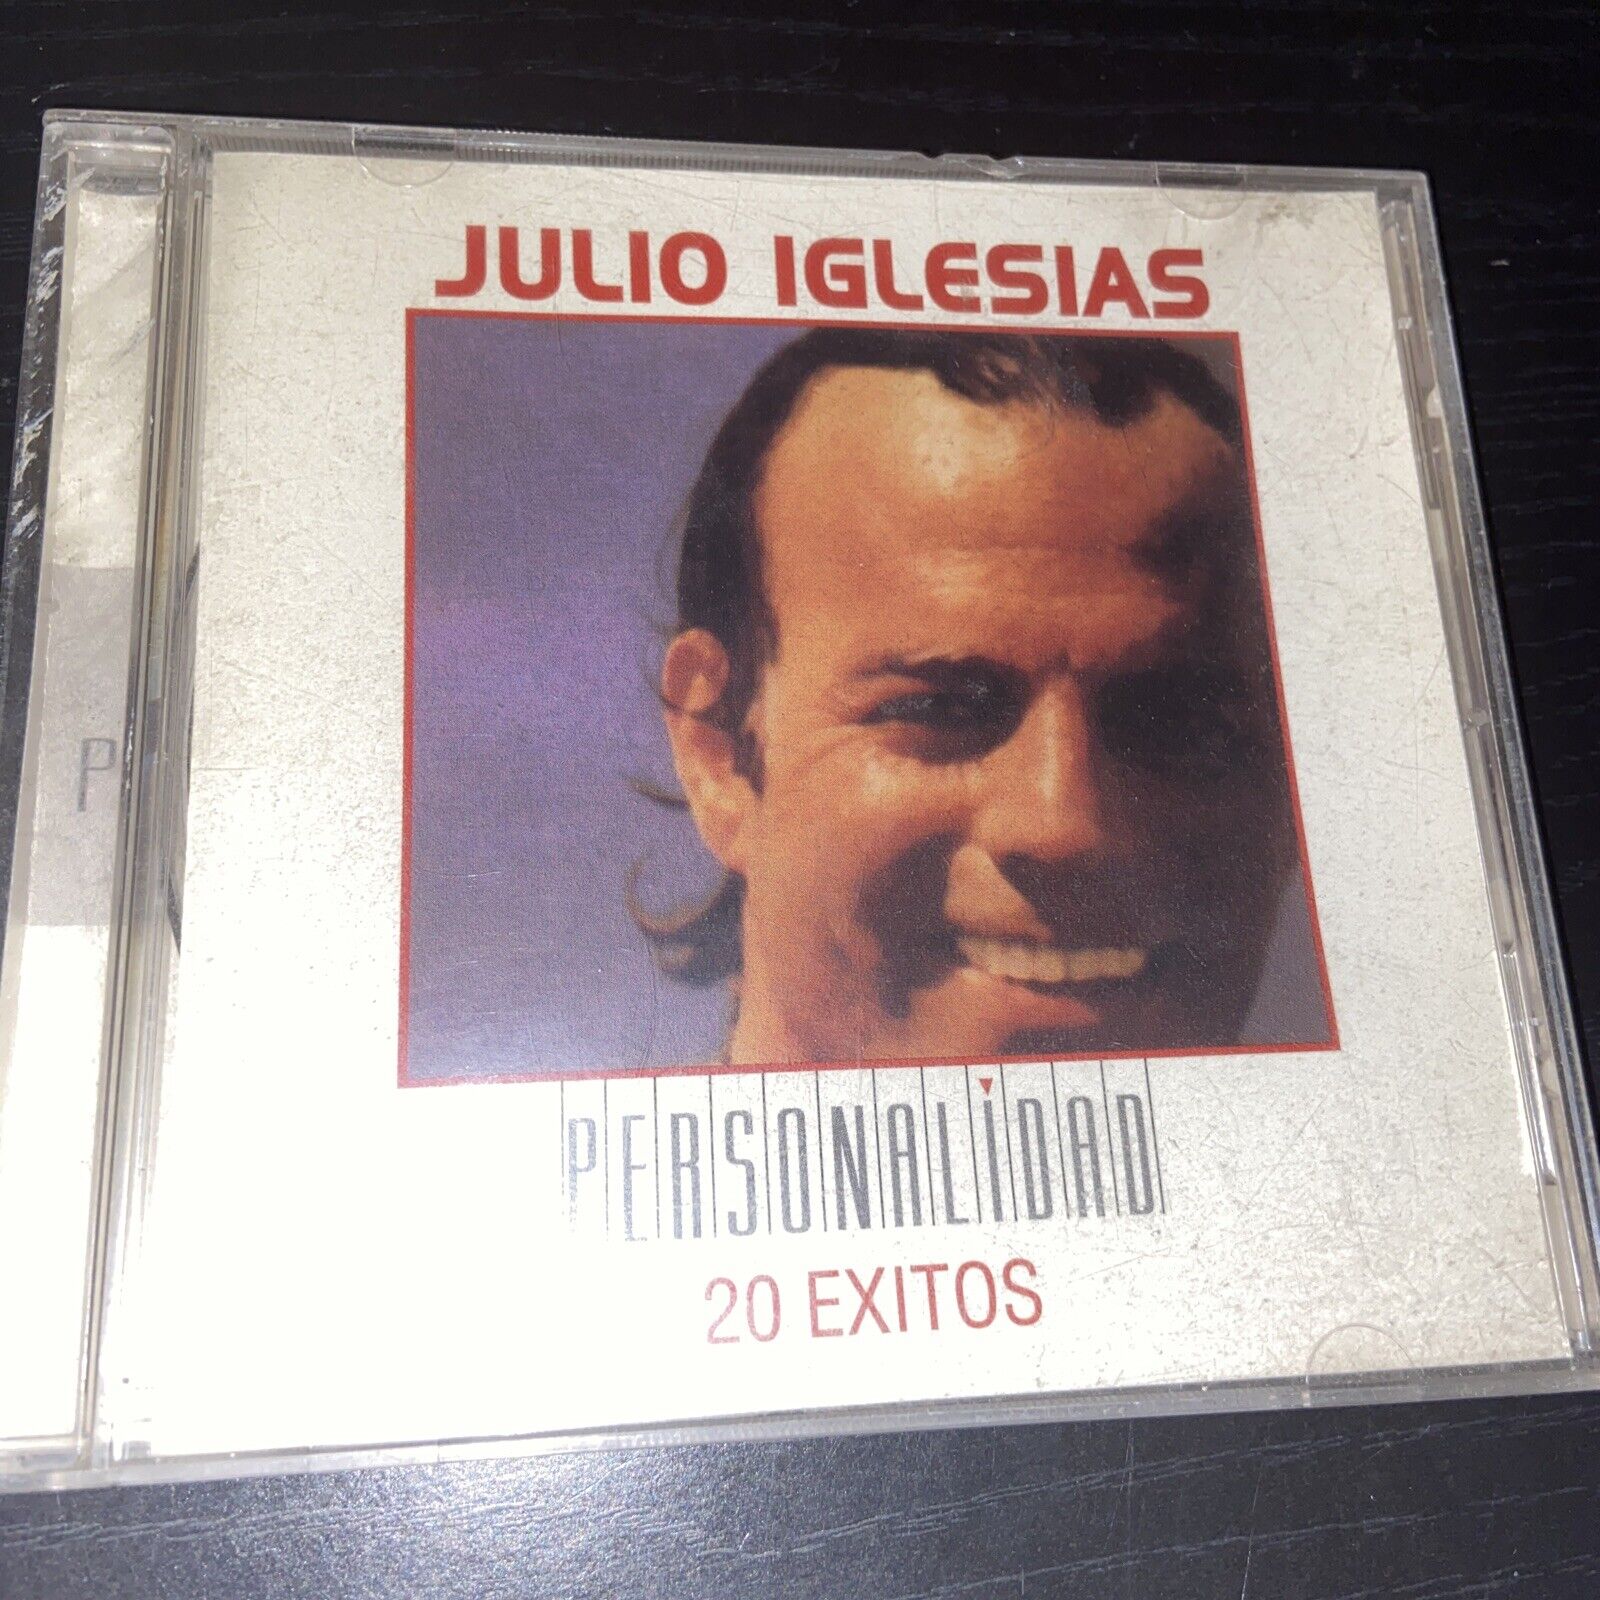 Julio Iglesias Personalidad - 20 Exitos CD SMK 87479